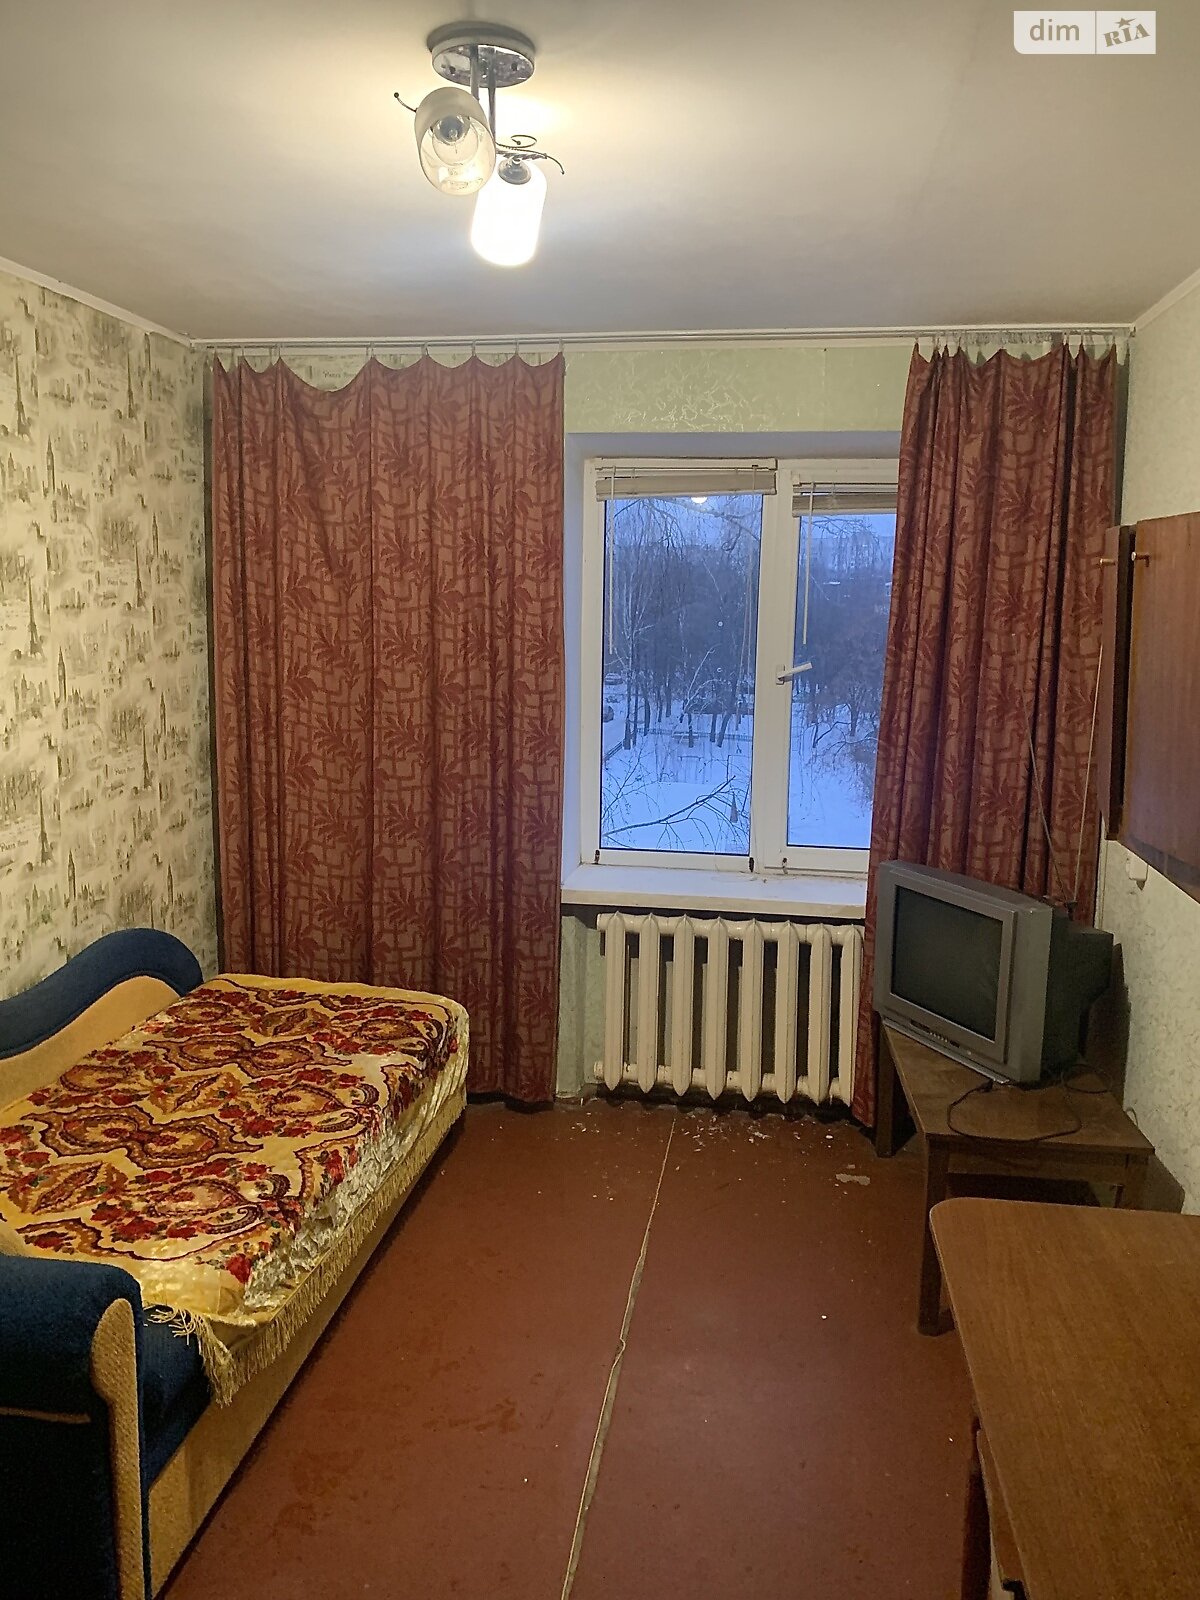 Кімната в Чернігові на вул. 1-ої танкової бригади 8 на продаж фото 1